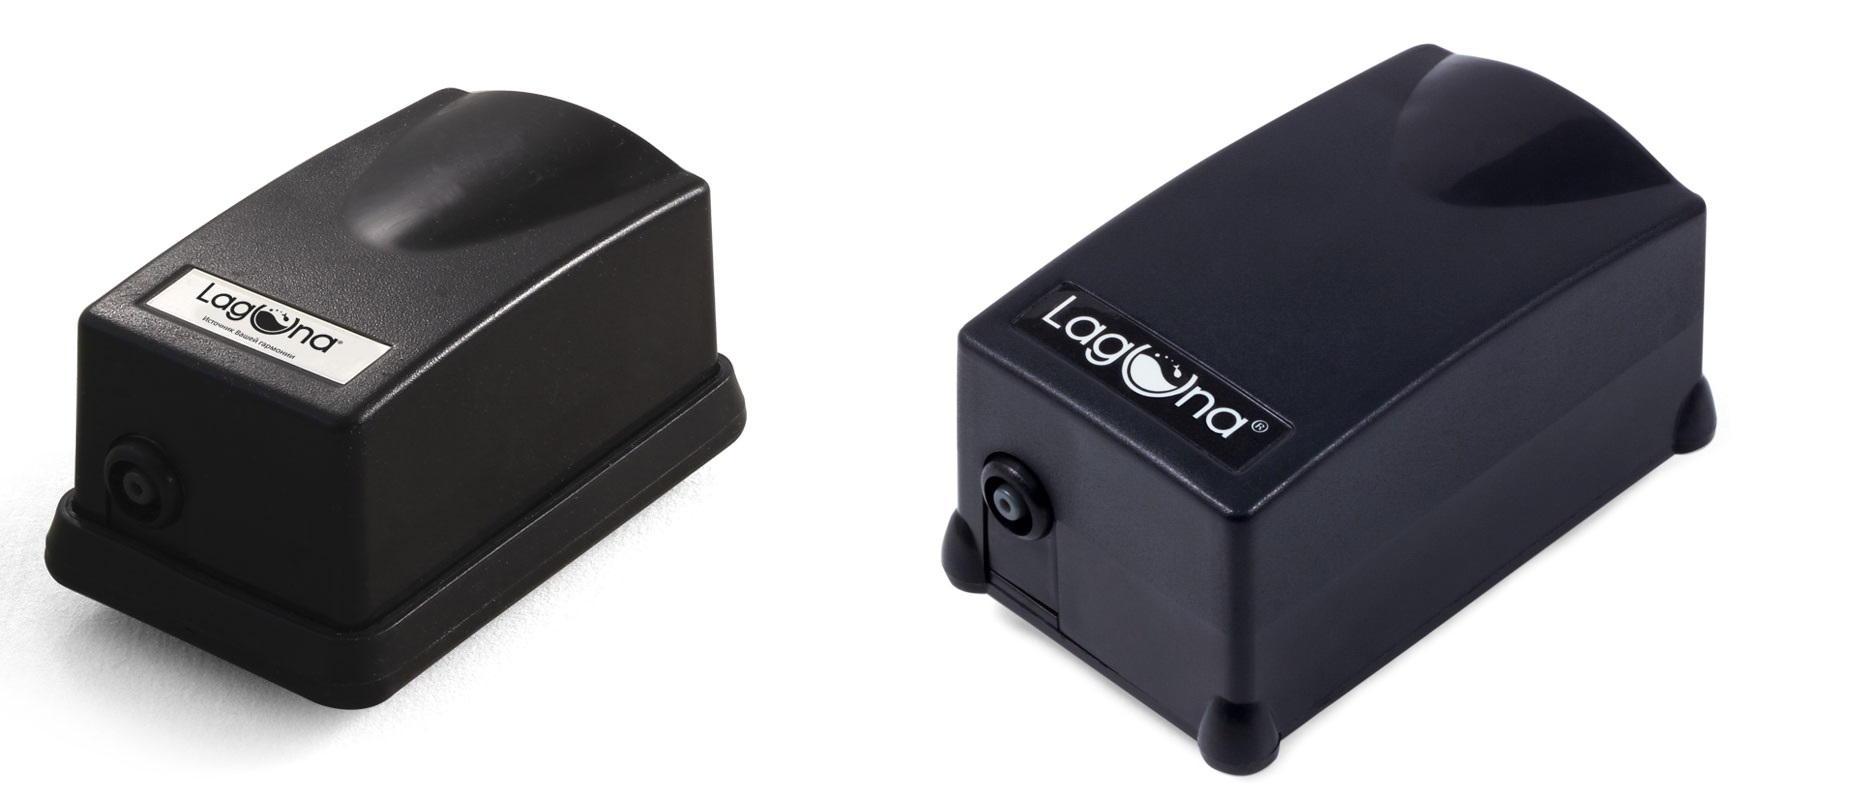 компактные компрессоры бренда Laguna – 2500A и 3500A